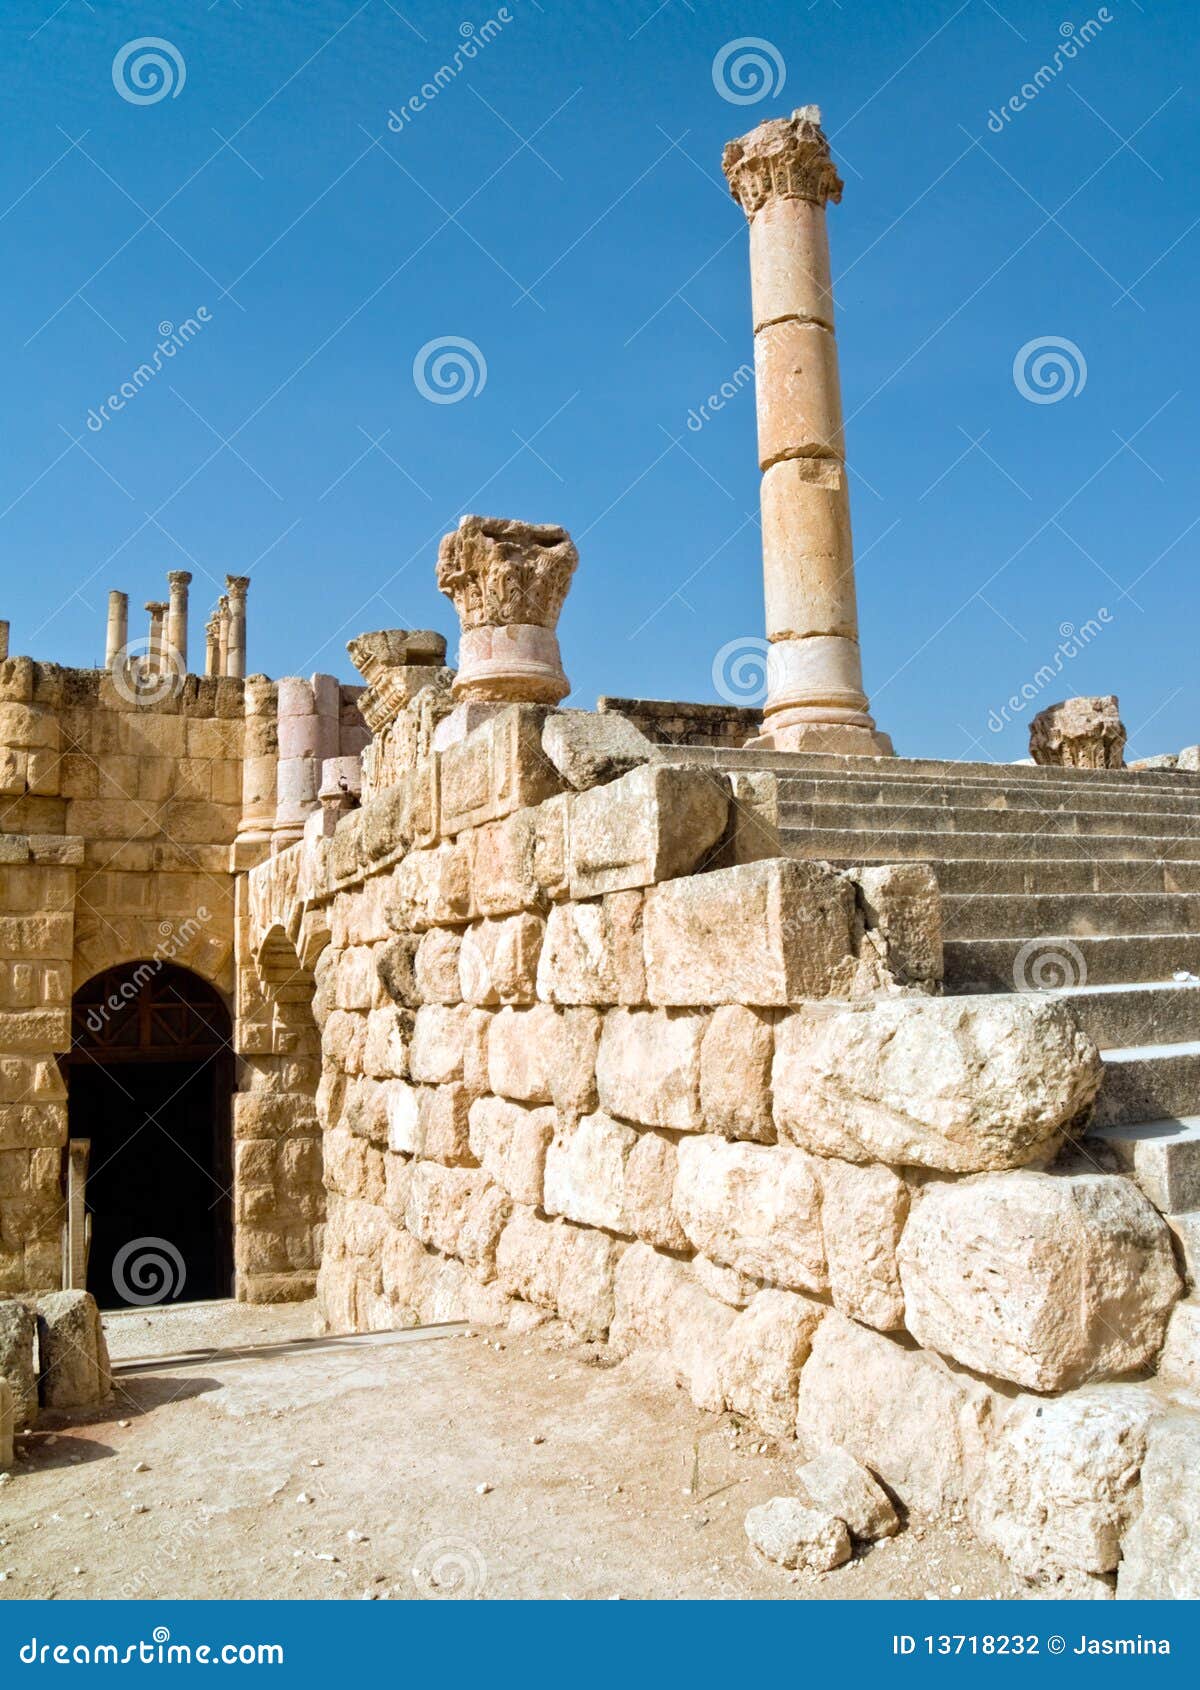 The Forum in Jerash, Jordan.